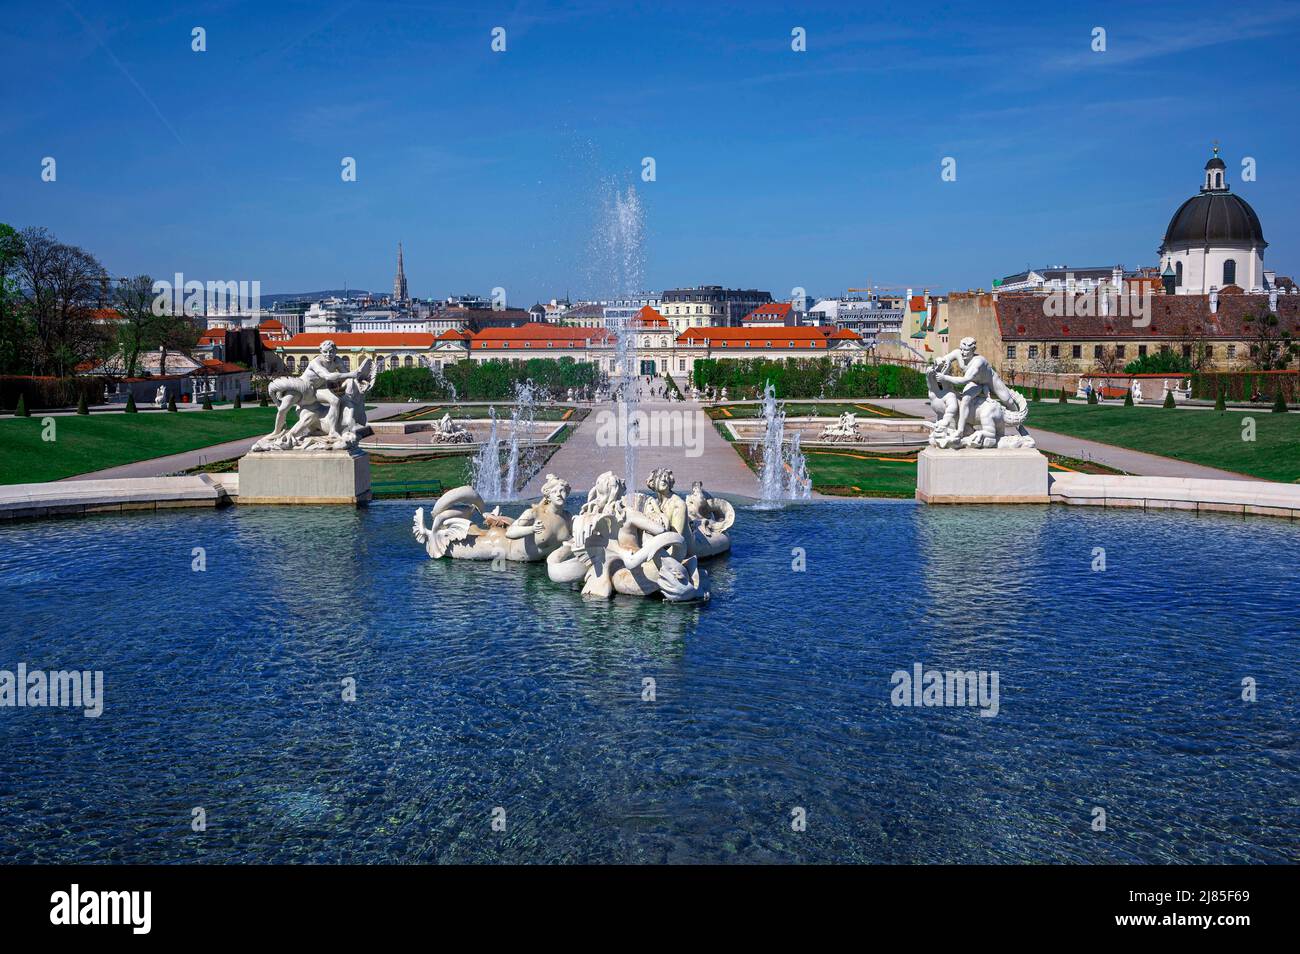 Fountain with sculpture in Belvedere gardens in Vienna, Austria Stock Photo